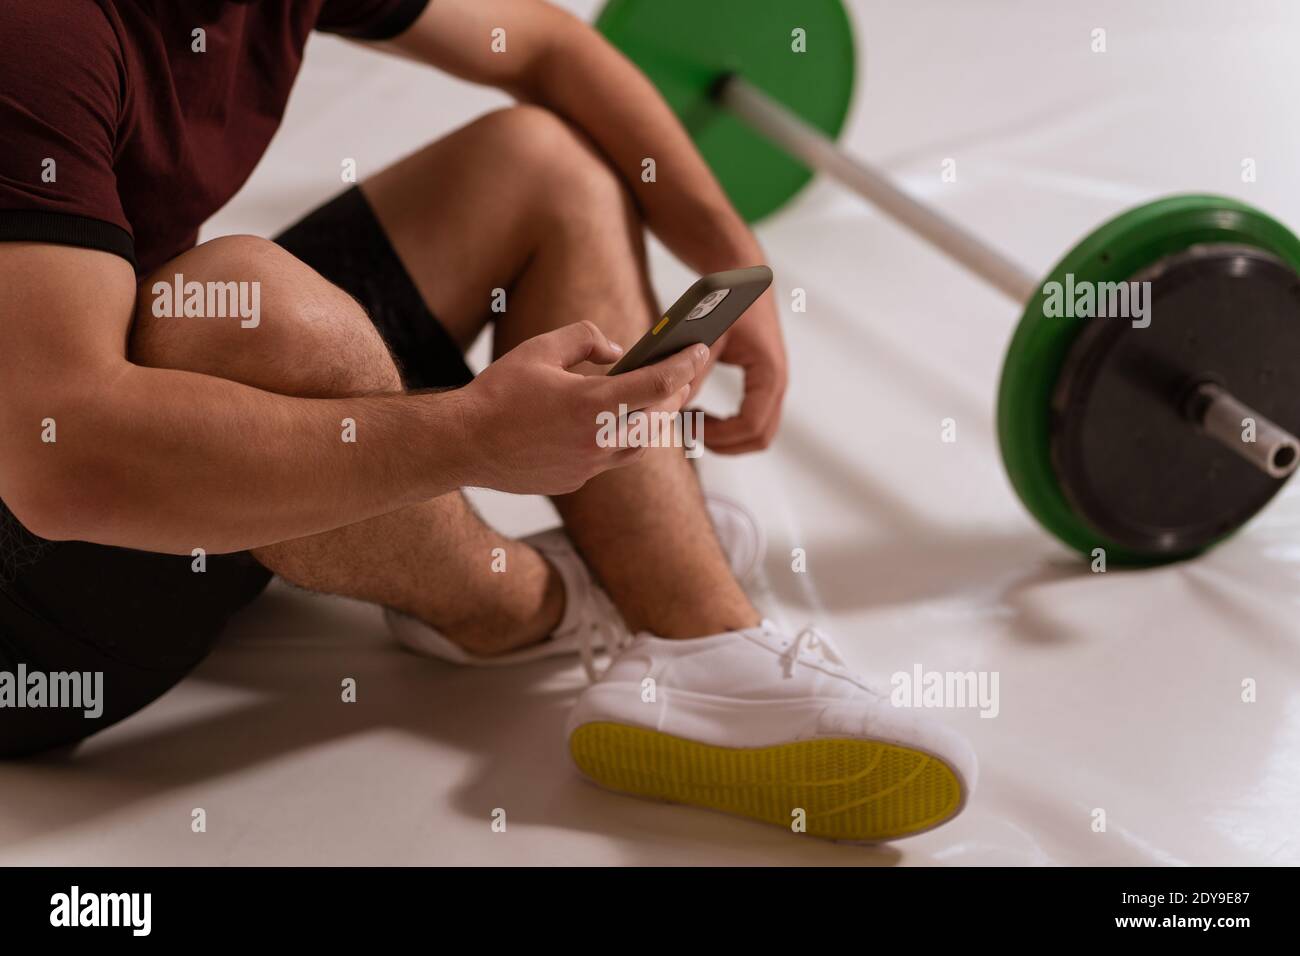 Body close up shot di un giovane uomo con smartphone in mano navigando online o testando seduto sul pavimento, tono nero e verde barbell fitness, attrezzature Foto Stock